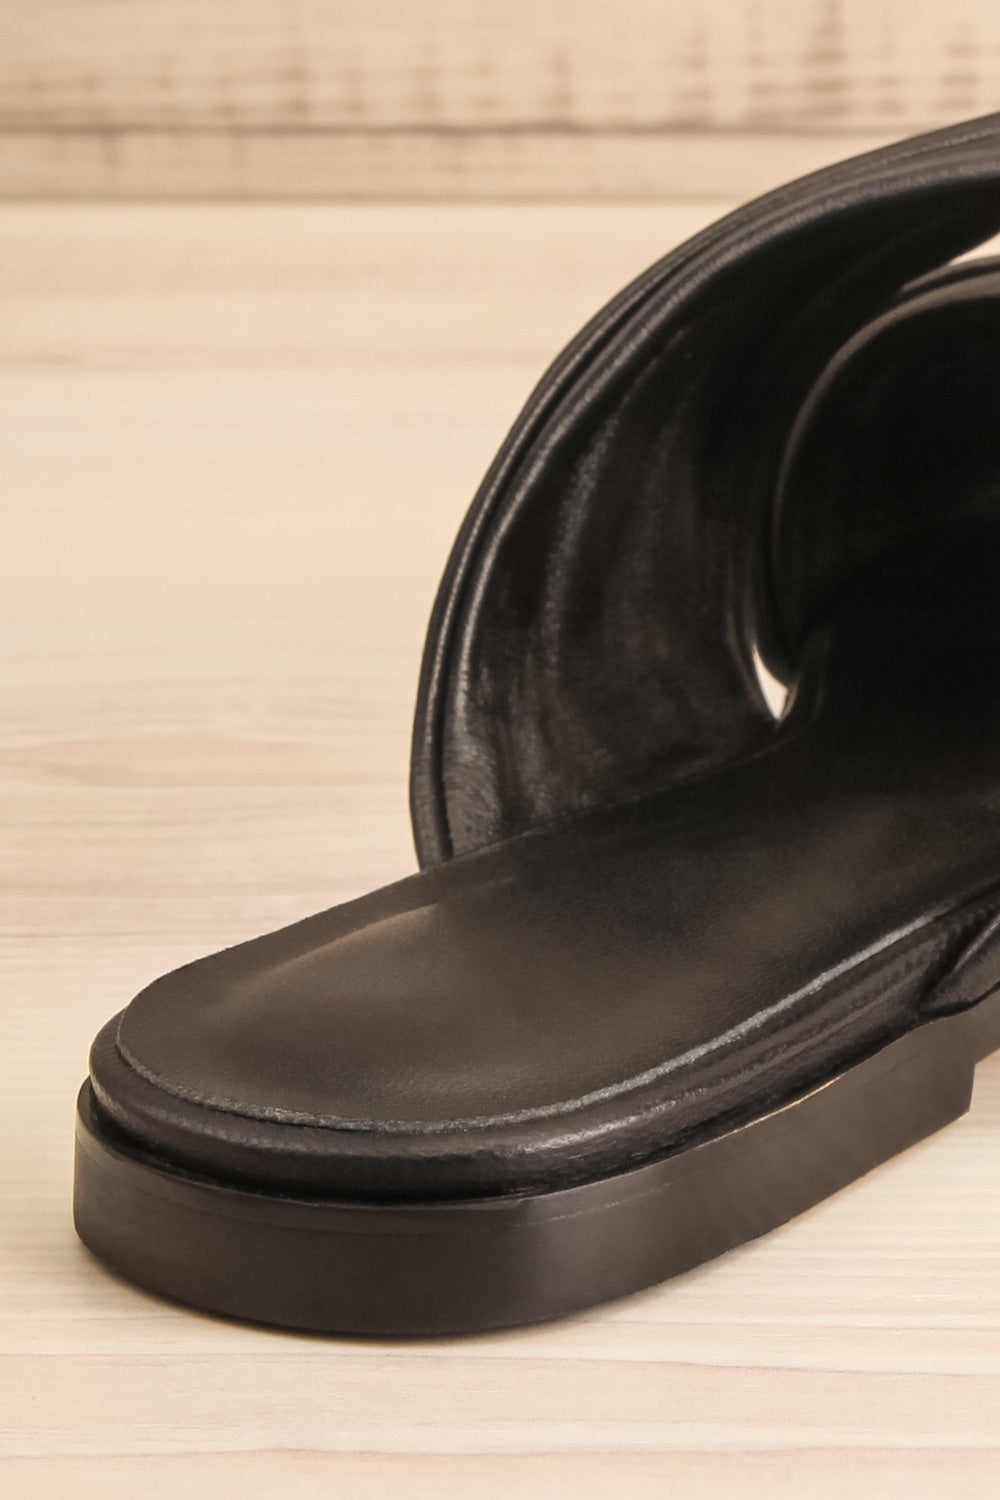 Benere Black Leather Knotted Slide Sandals | La petite garçonne back close-up